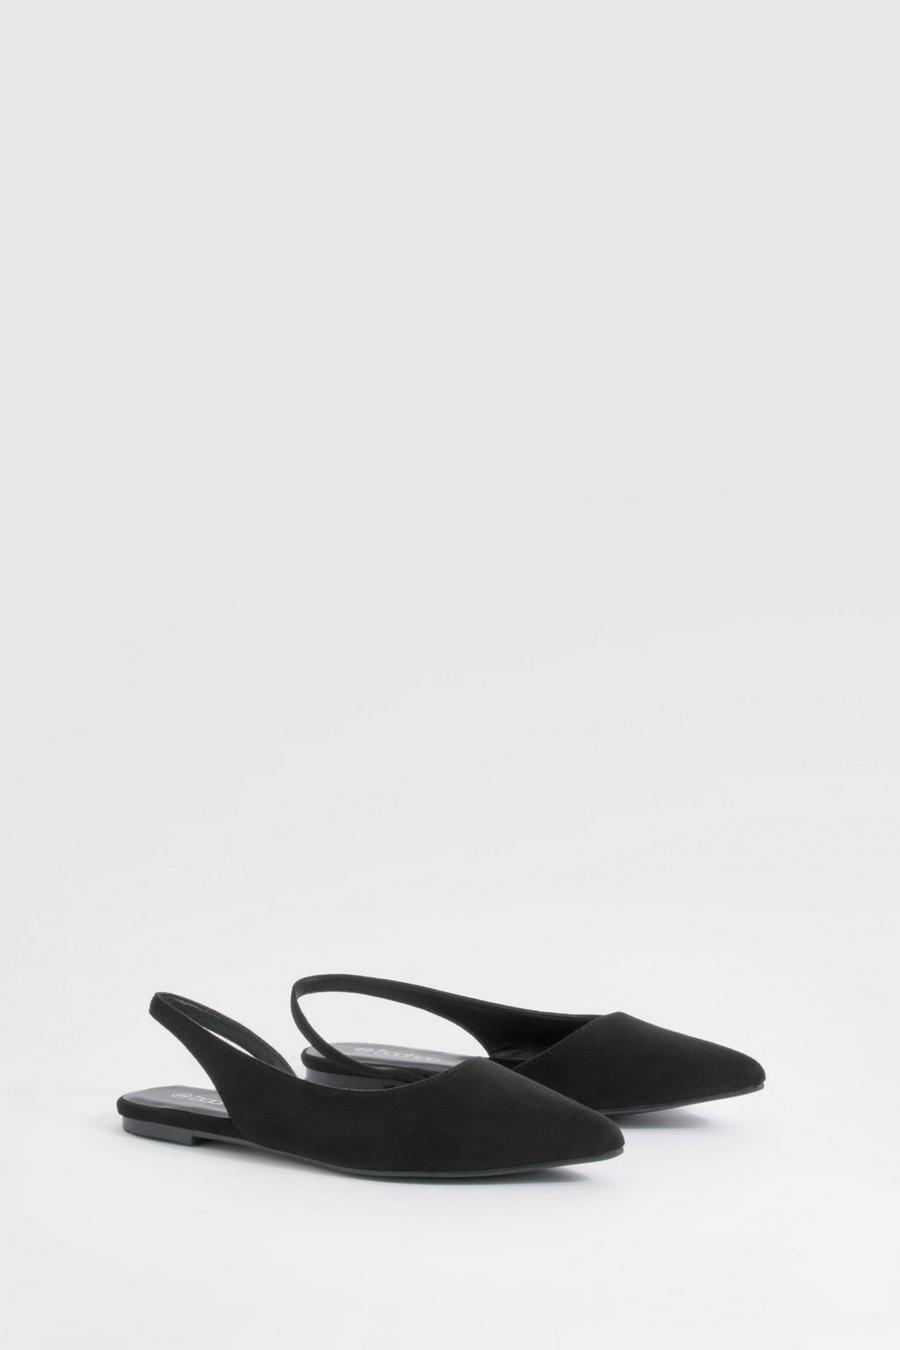 Chaussures plates pointues en faux daim, Black